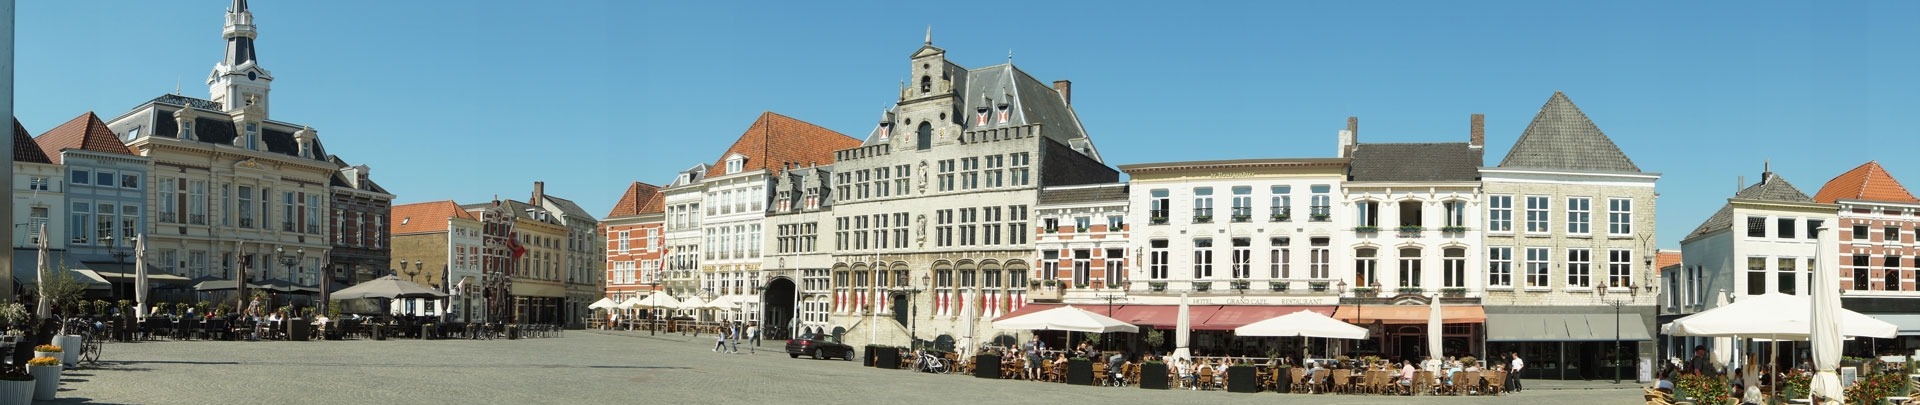 Het marktplein van Bergen op Zoom